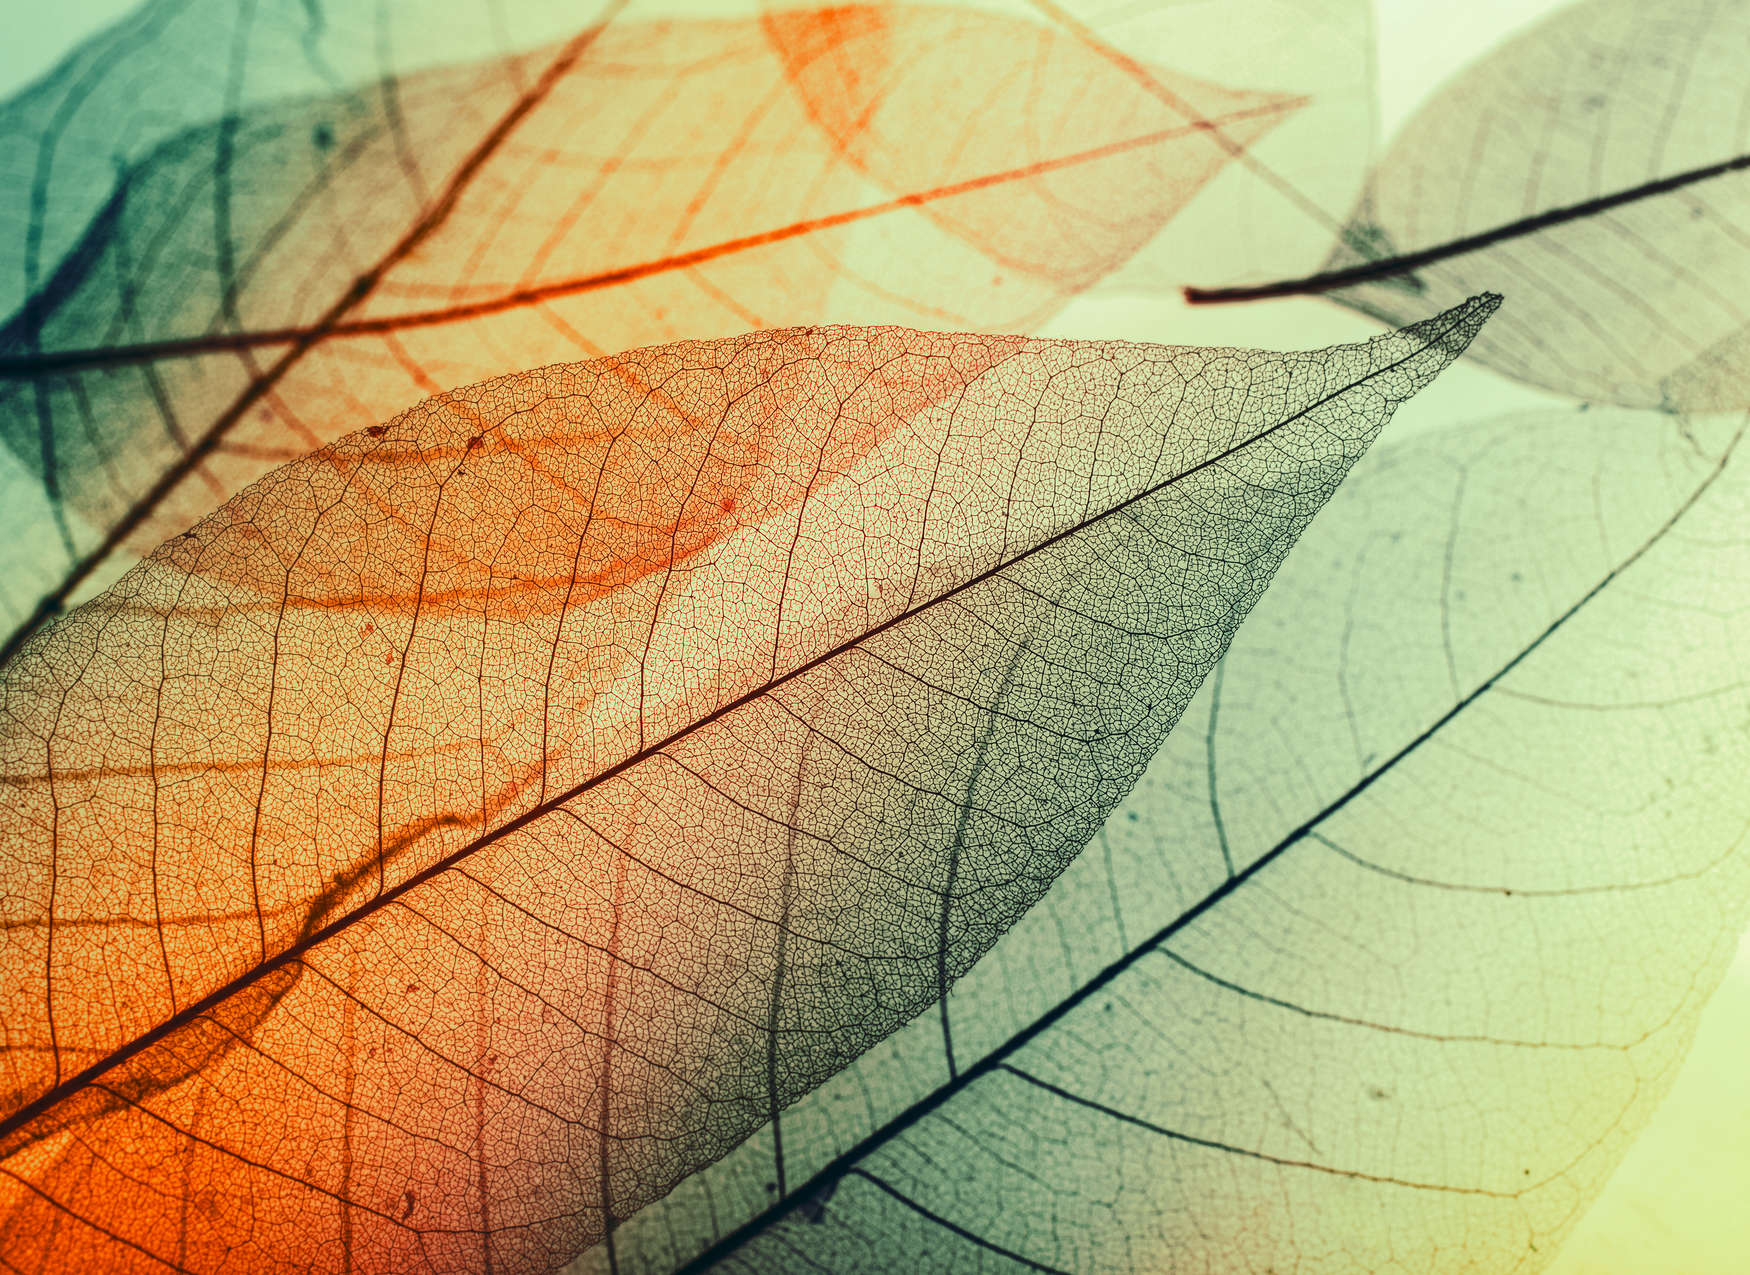             Leaf Design Onderlaag behang - Groen, Oranje, Zwart
        